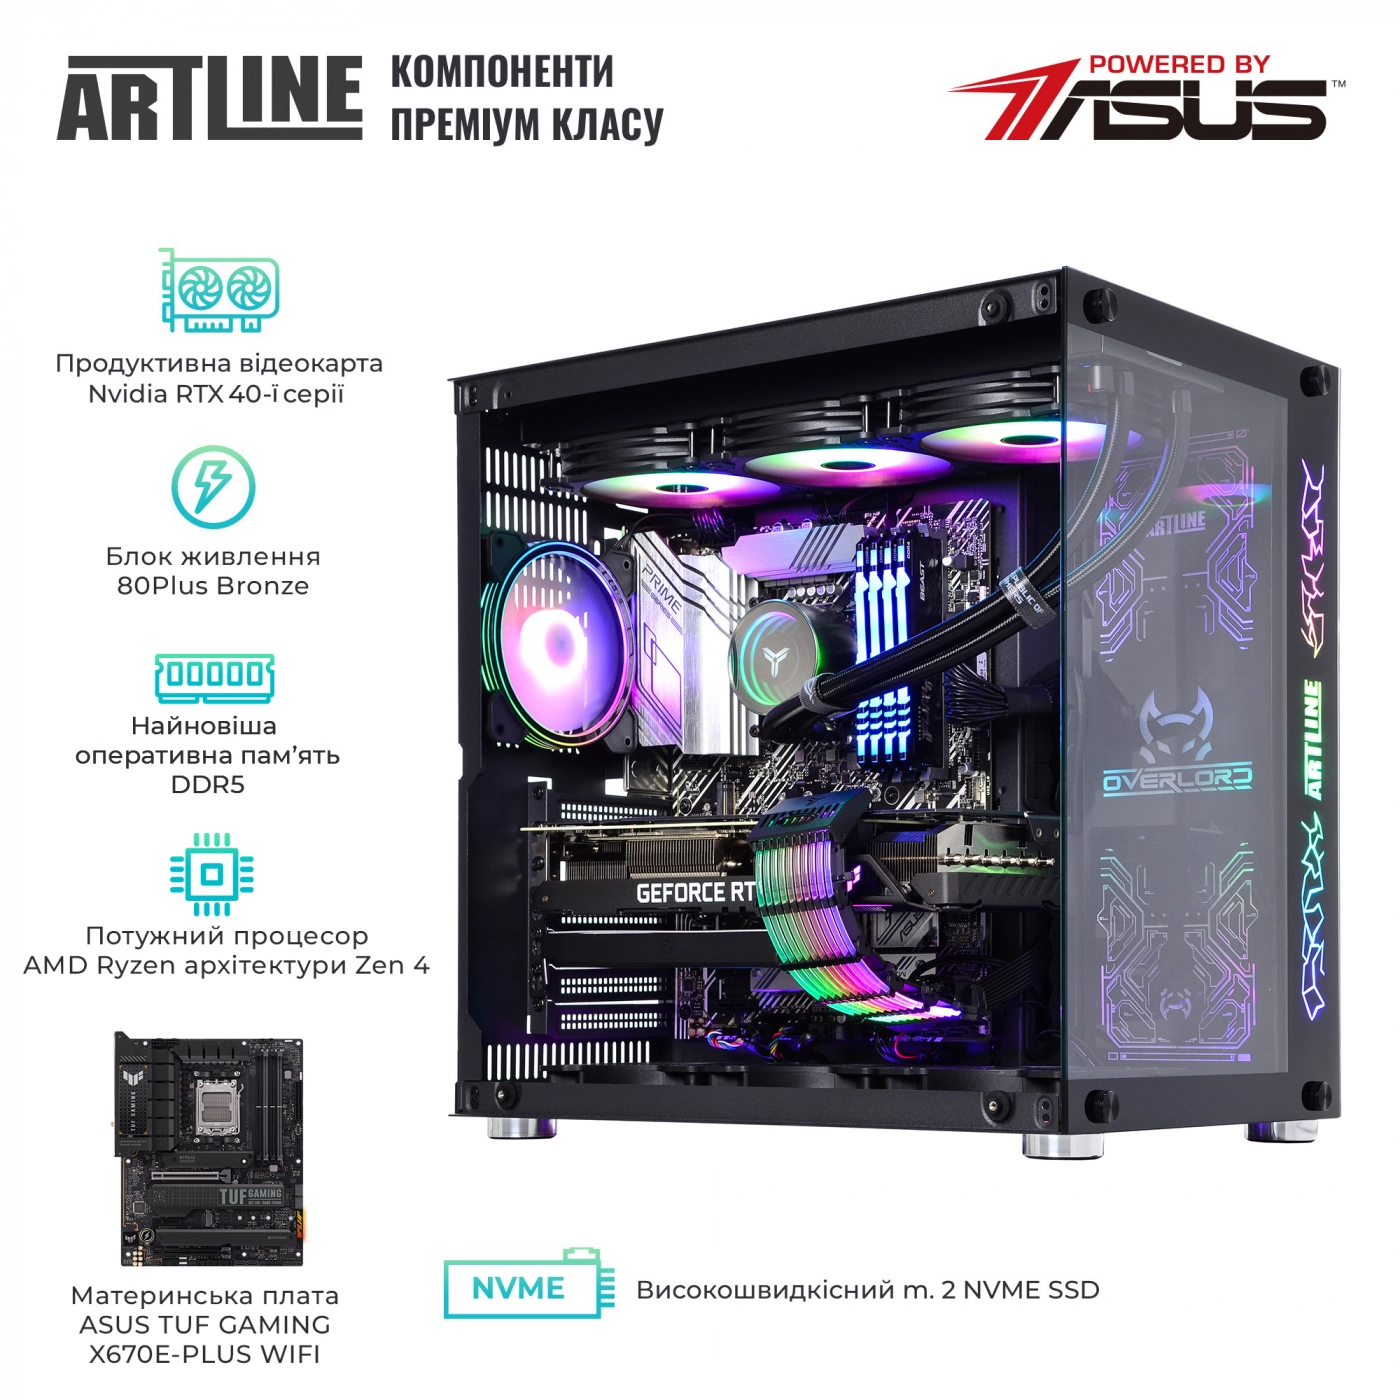 Купить Компьютер ARTLINE Gaming X98v60 - фото 4